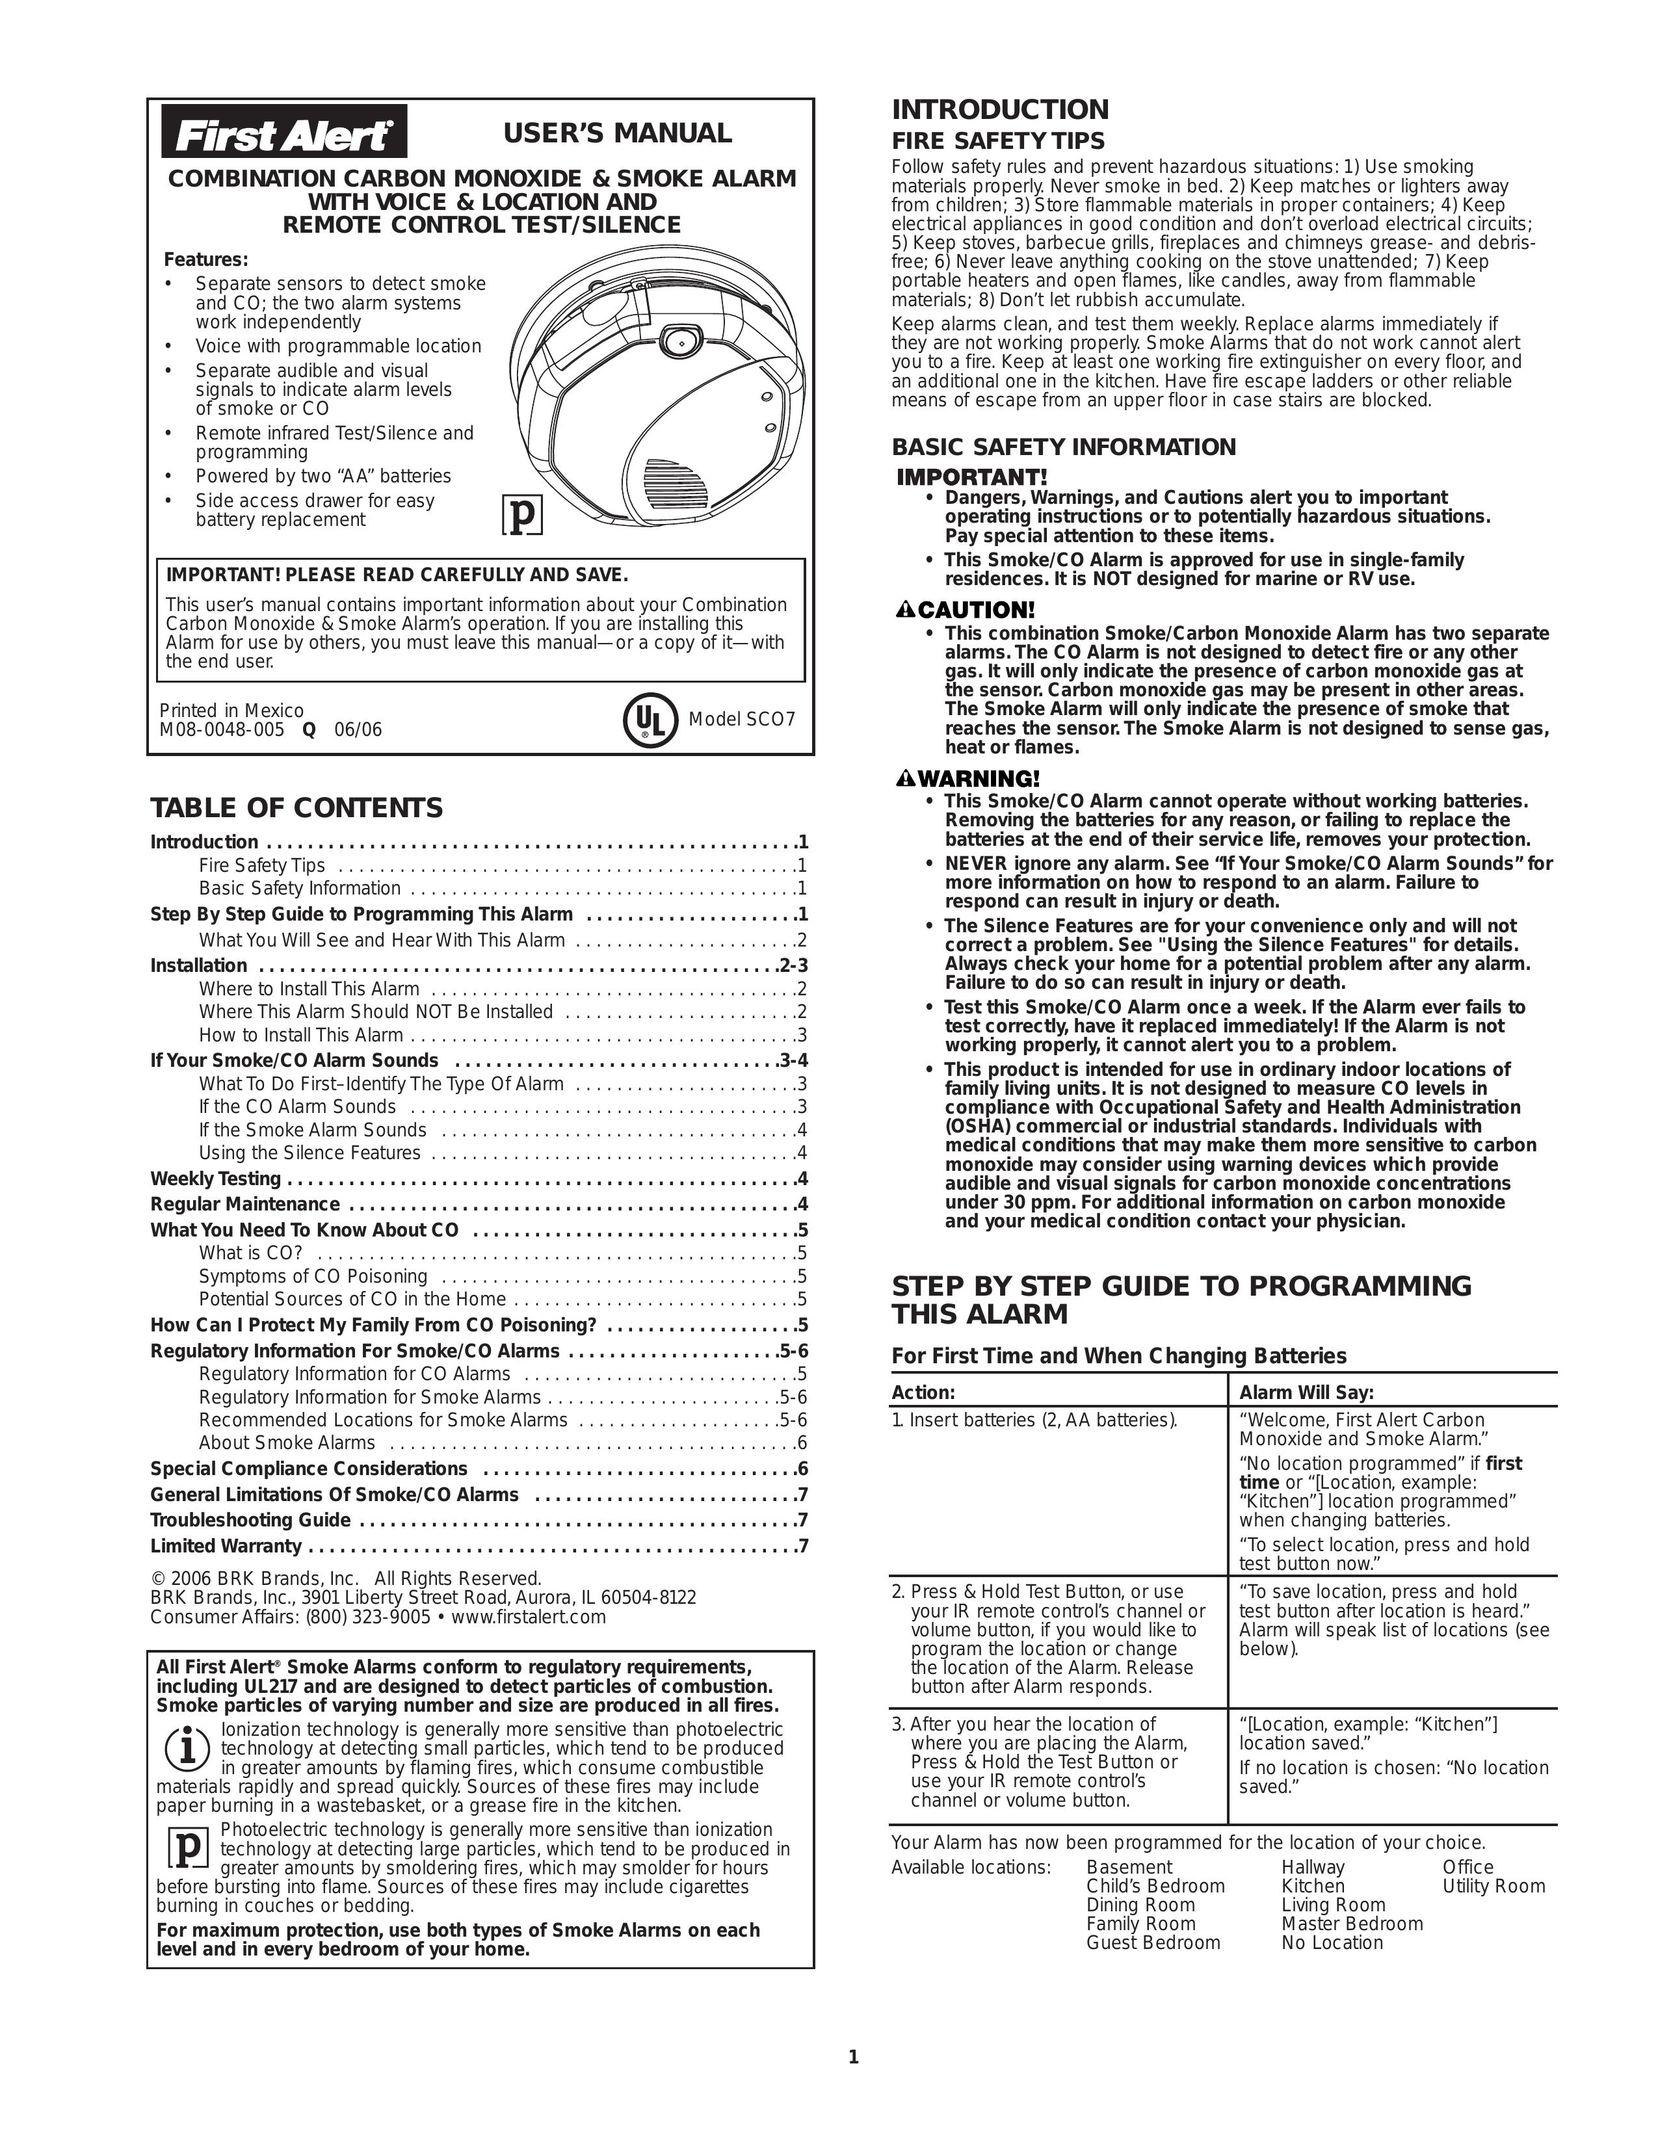 First Alert SCO7 Smoke Alarm User Manual